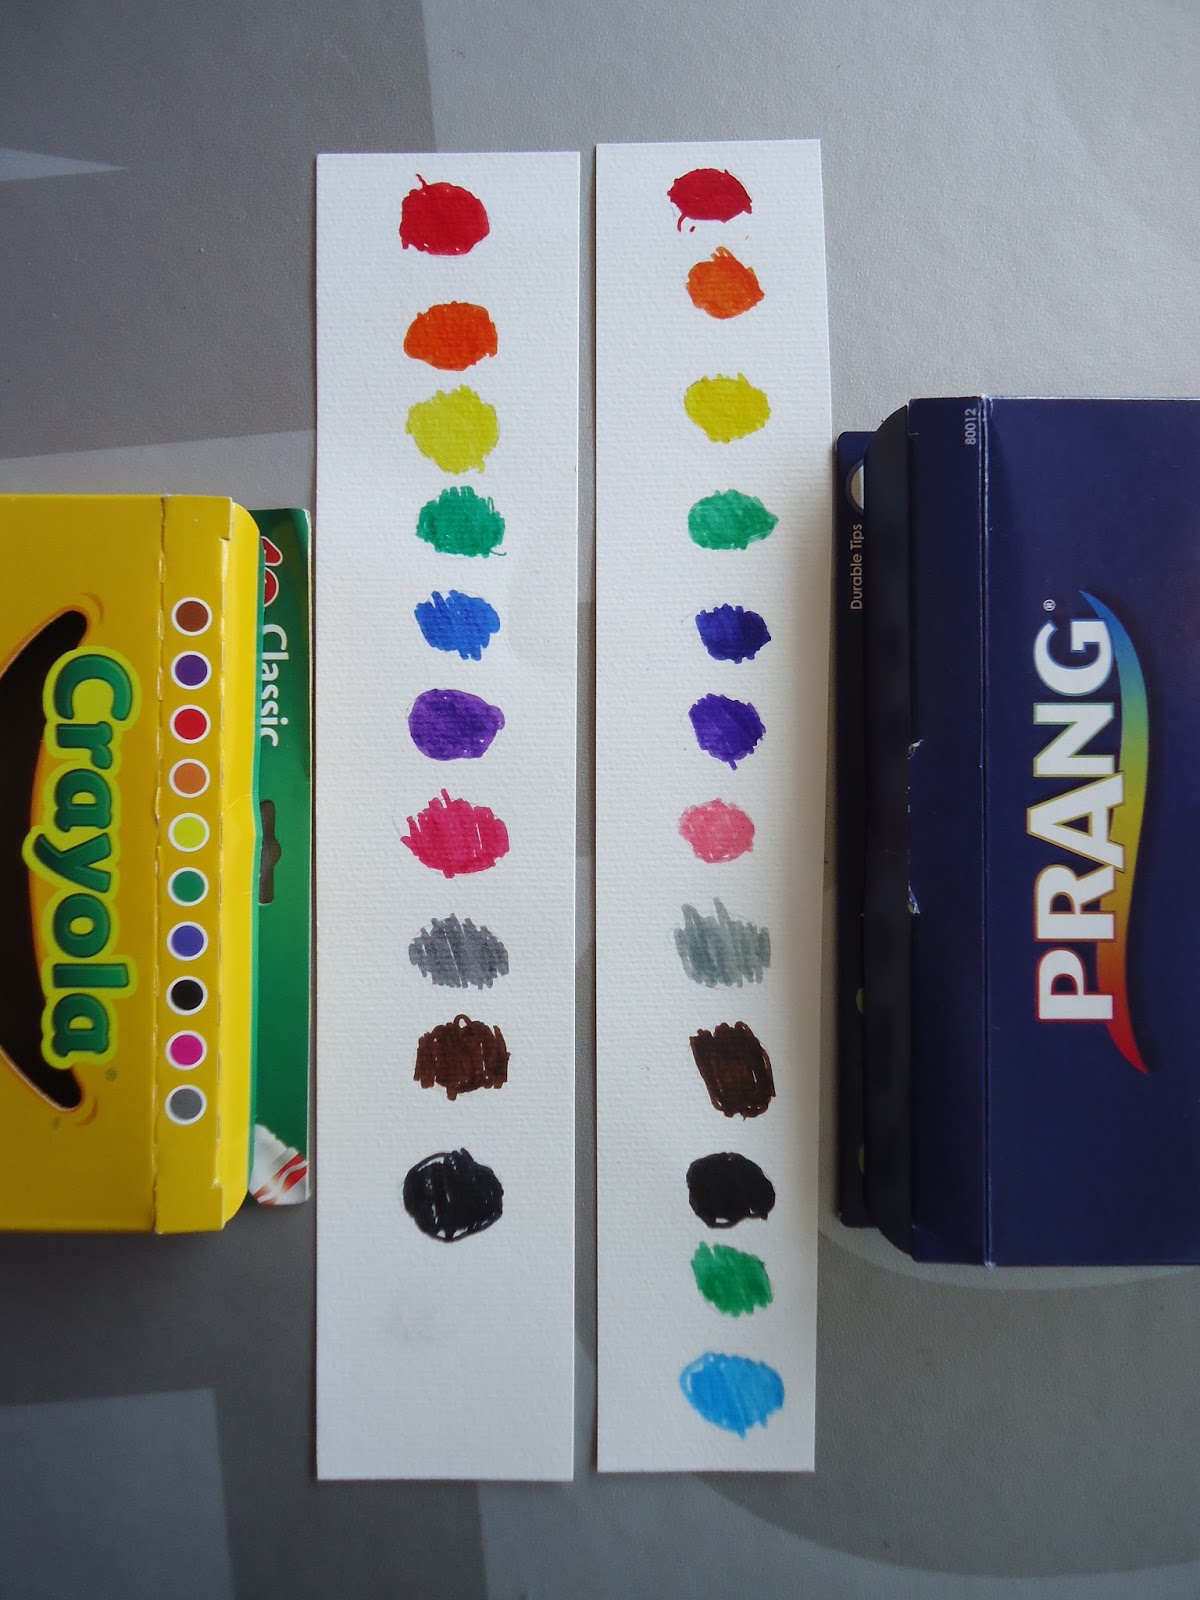 Crayons Versus Markers